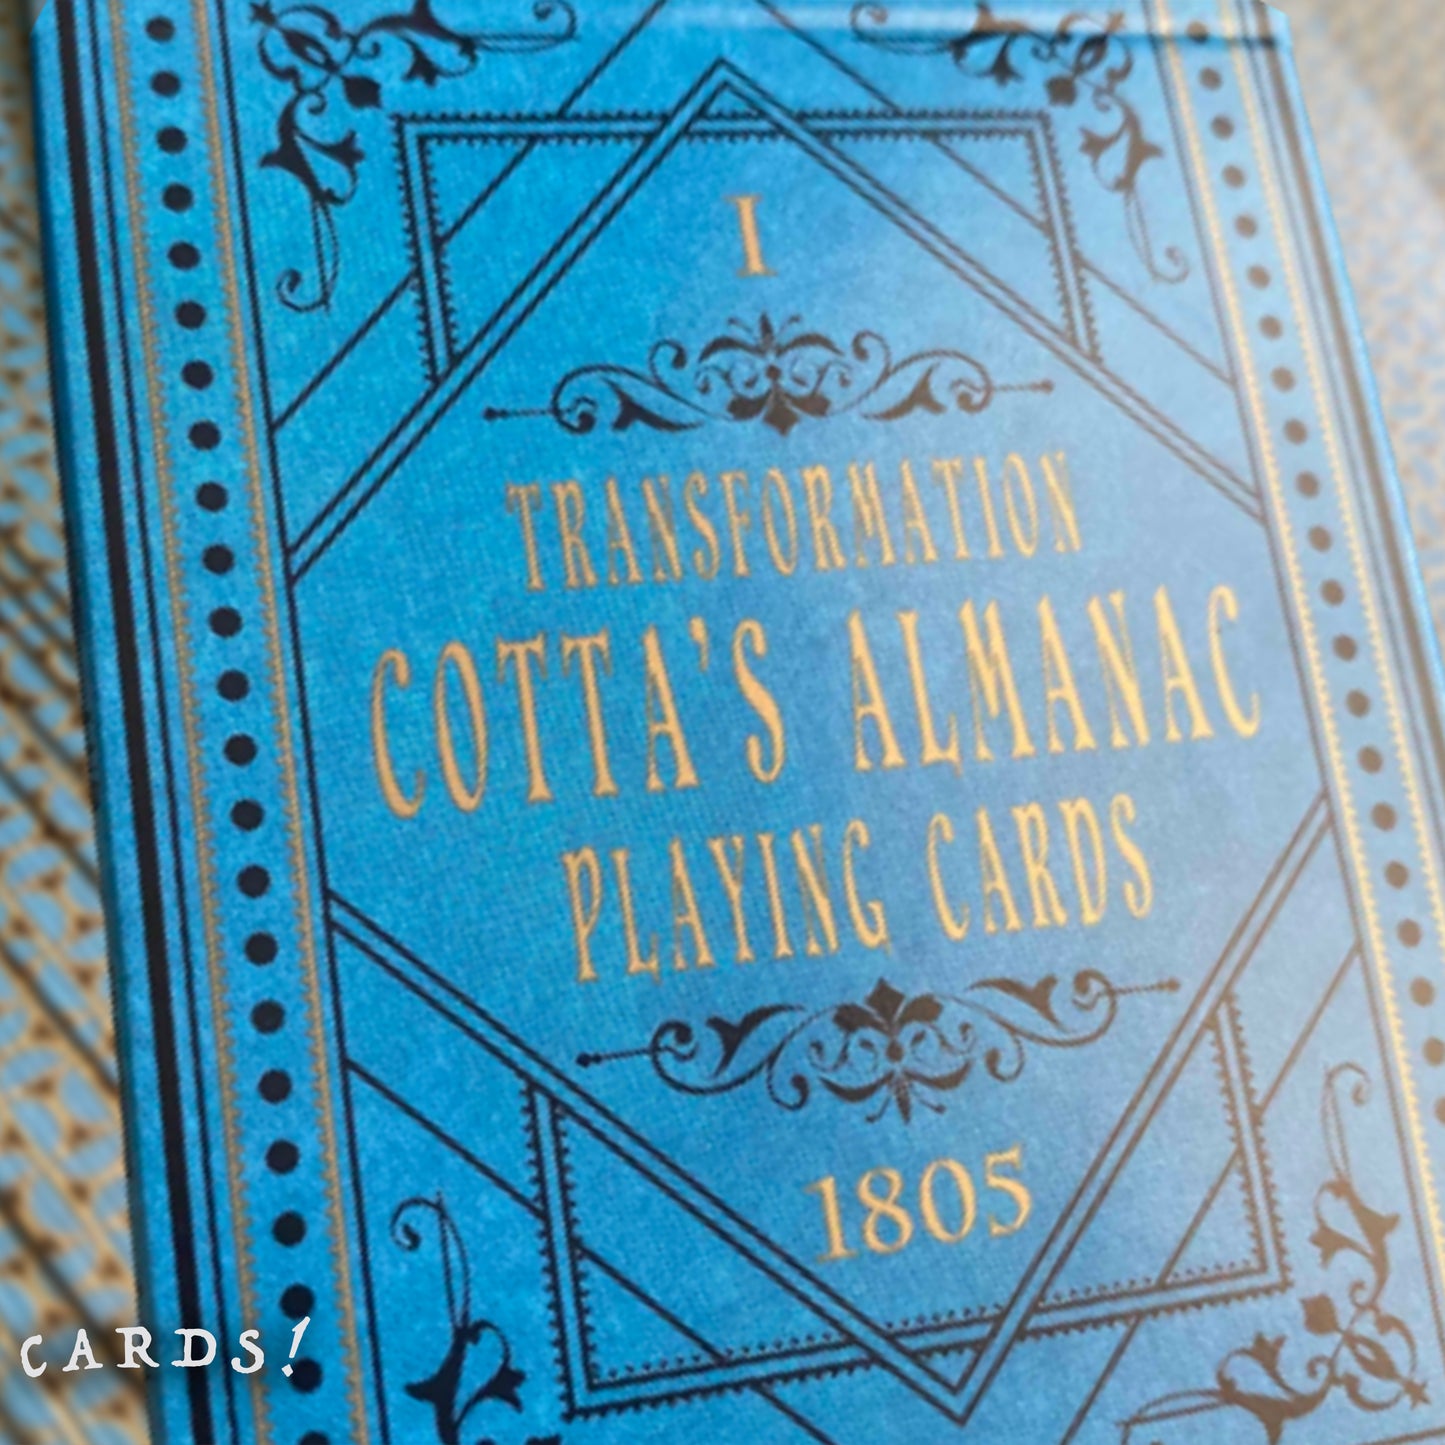 Cotta's Almanac 第一版 啤牌 撲克牌